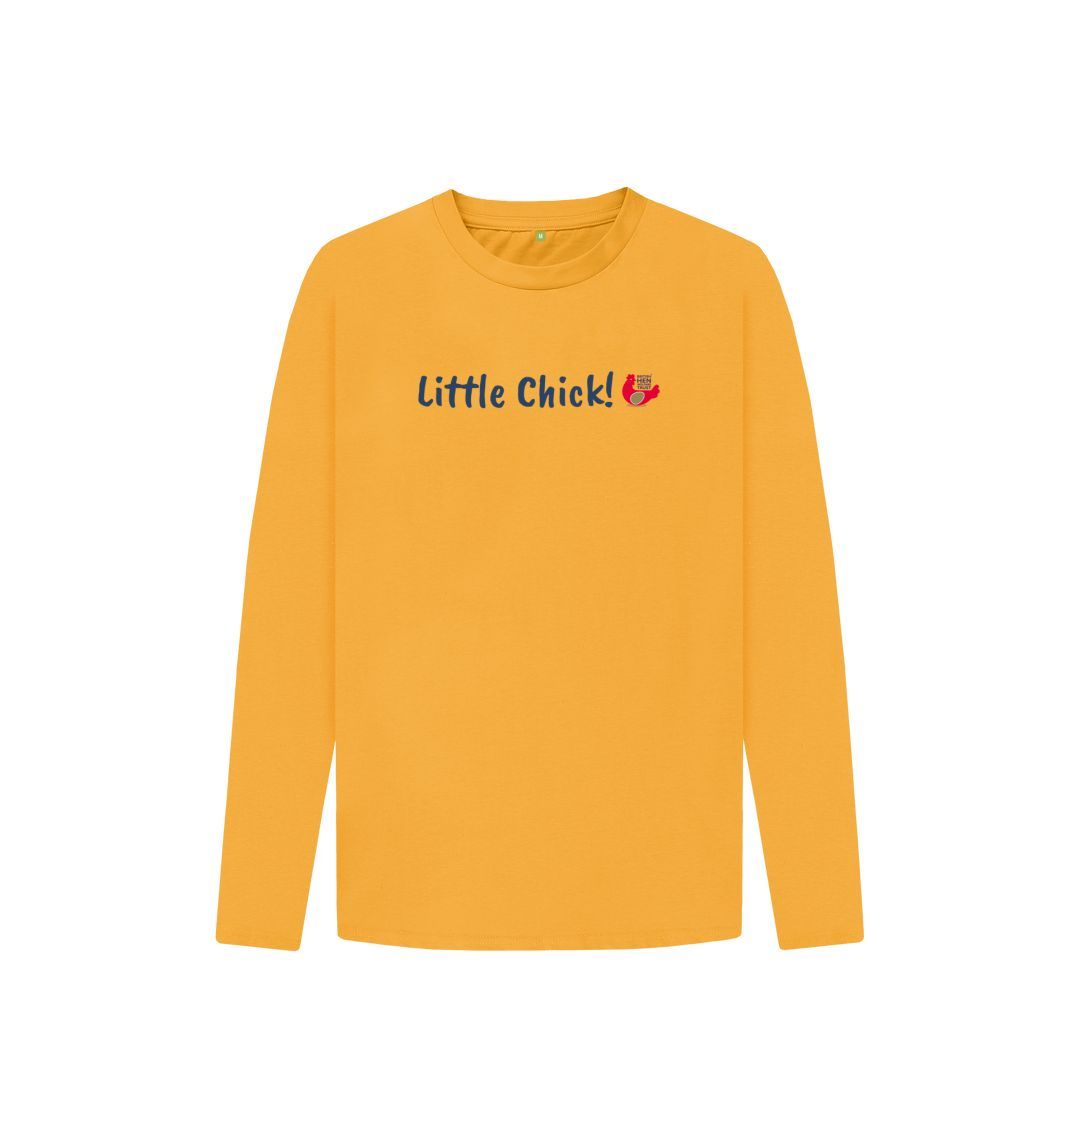 Mustard Little Chick! Kids Unisex Long Sleeve T-Shirt